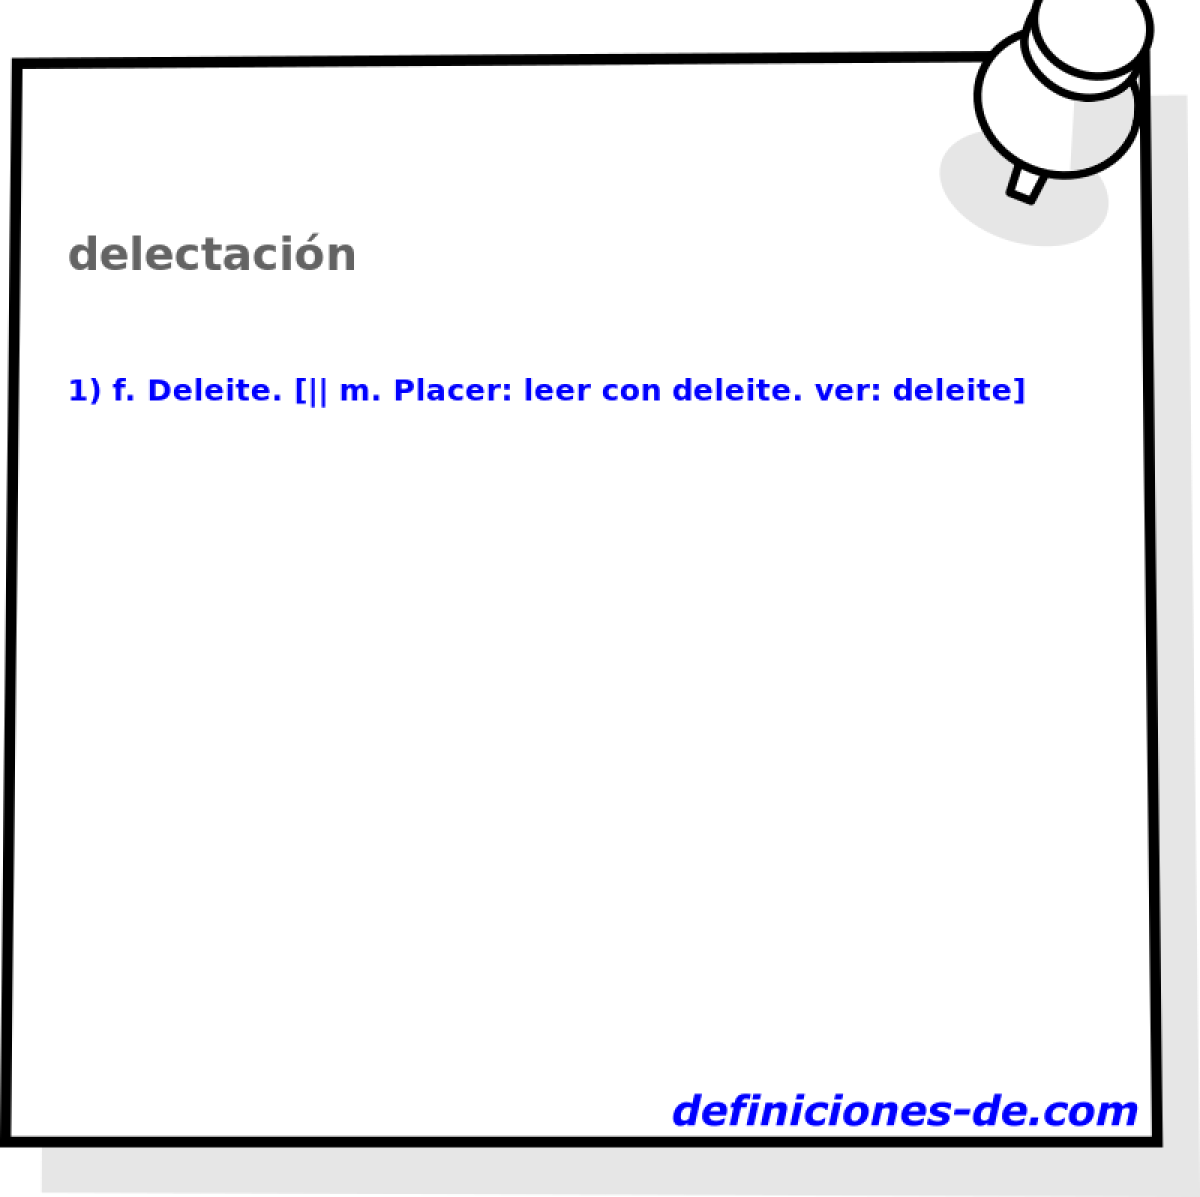 delectacin 